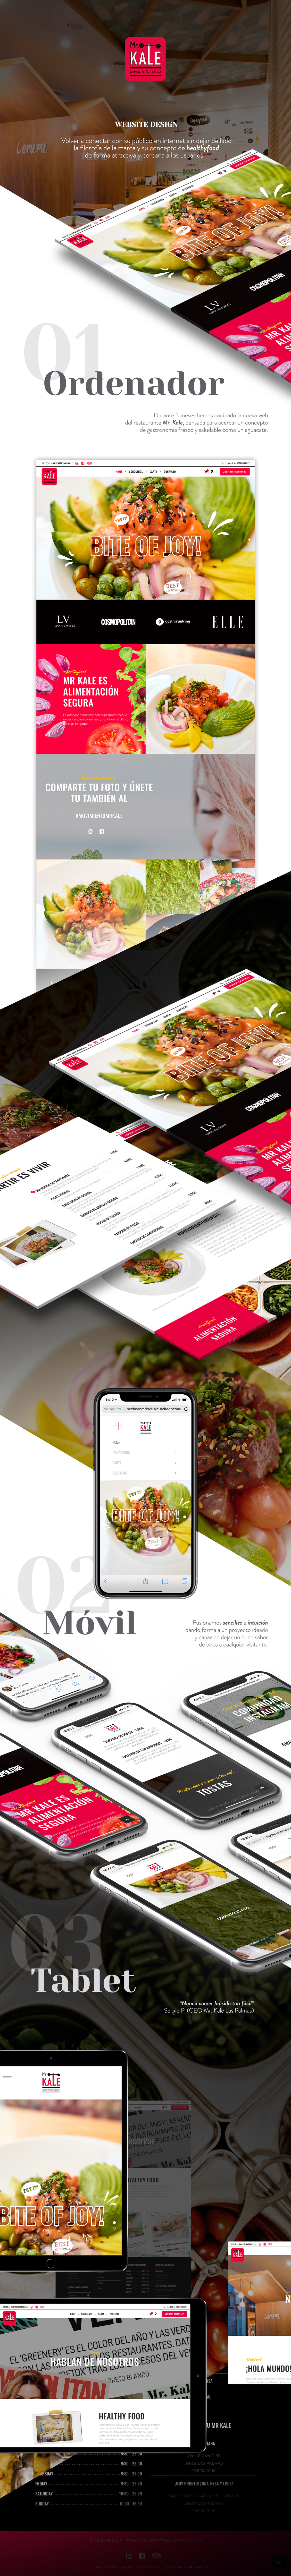 Web Diseño web desarrollo web Web Design  web restaurante restaurante poke canarias españa